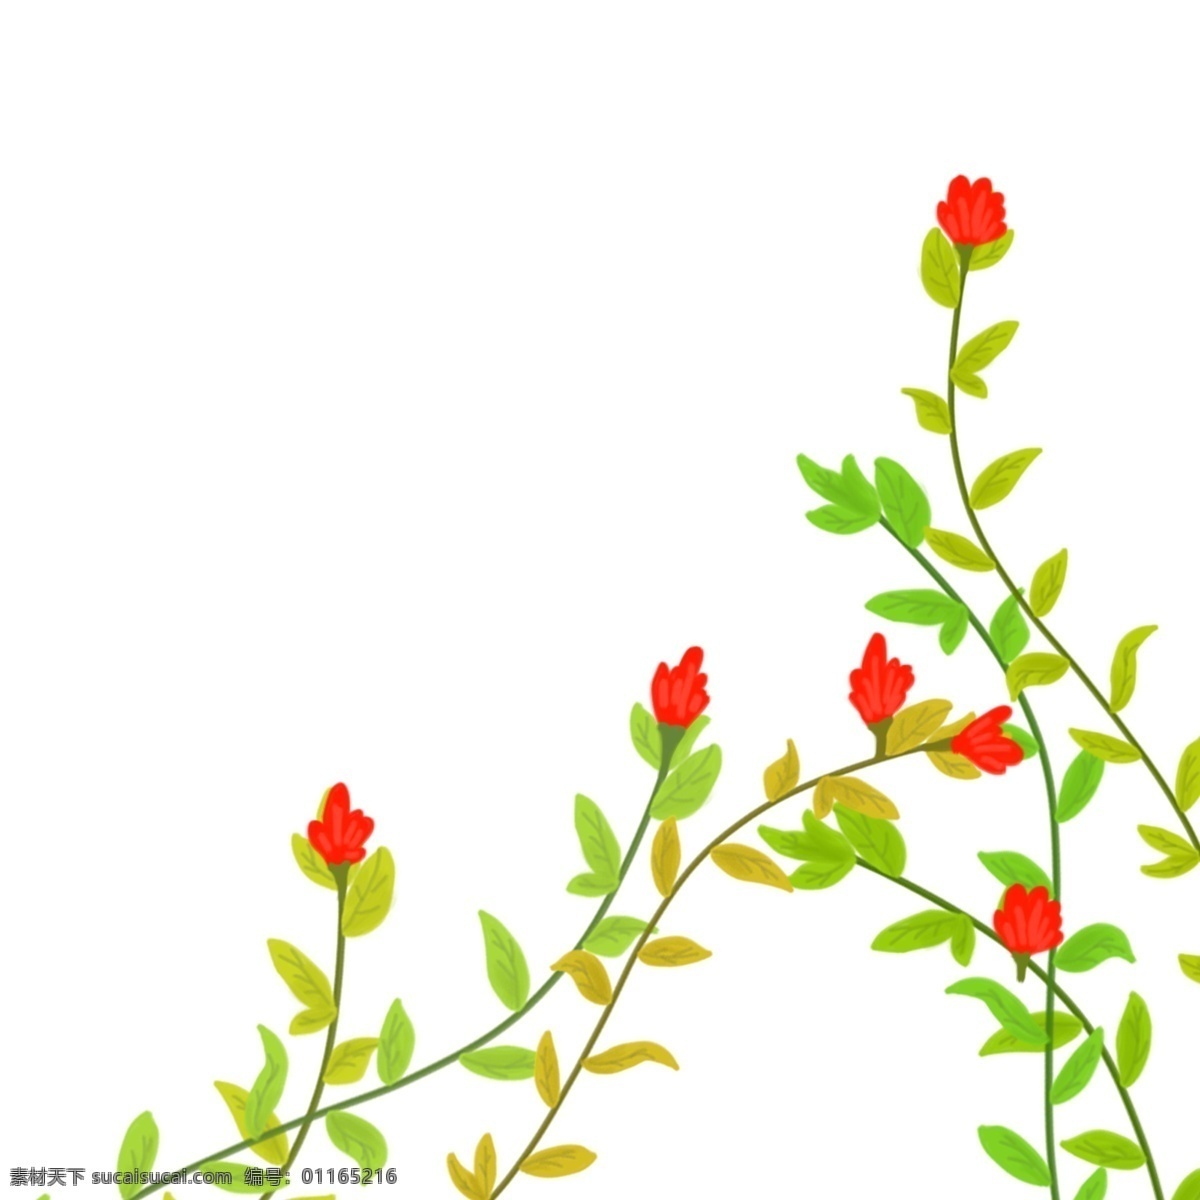 春夏 前景 花叶 草 植物 手绘 插画 春 夏 花 叶 红色 绿色 清新 唯美 自然 郊外 野外